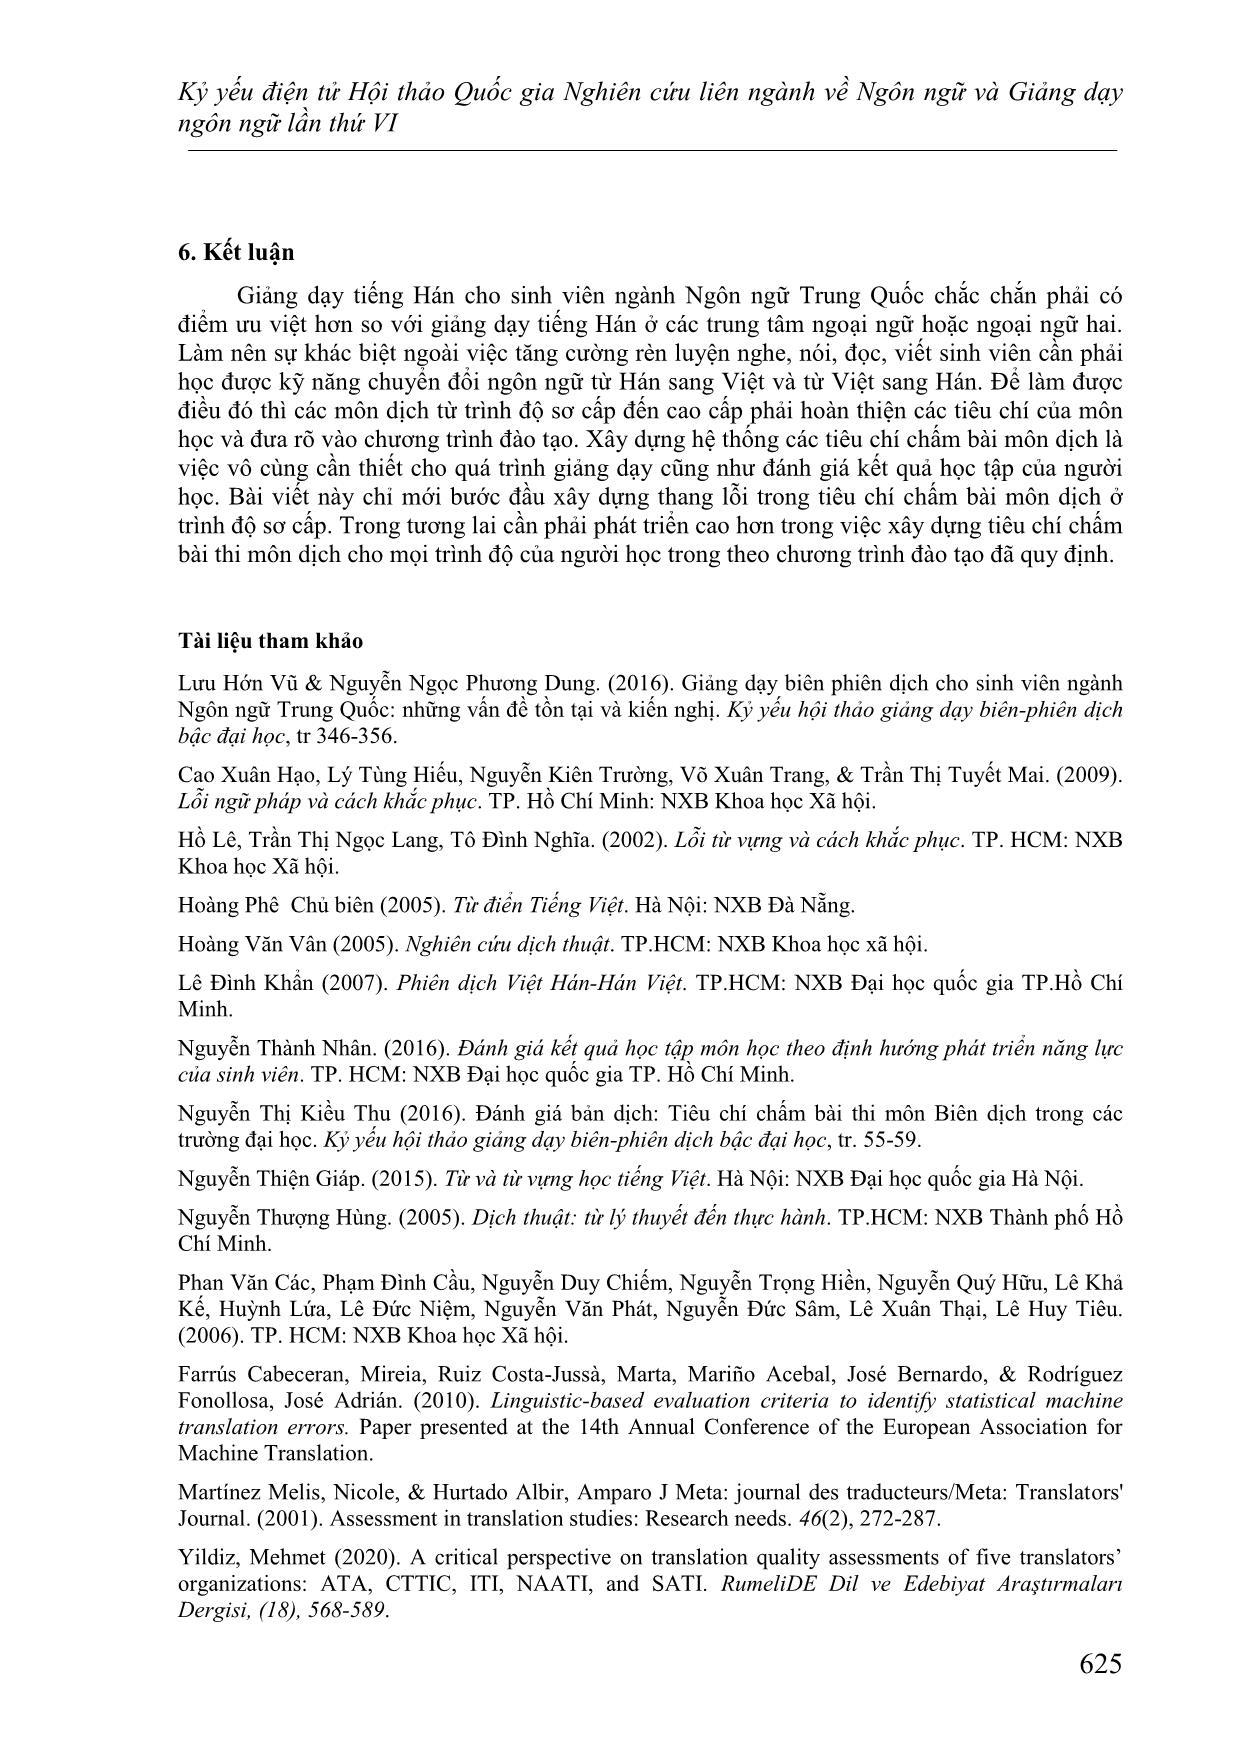 Đề xuất các tiêu chí xác định lỗi ngôn ngữ qua khảo sát các bản dịch từ Hán sang Việt của sinh viên ở trình độ sơ cấp trang 10